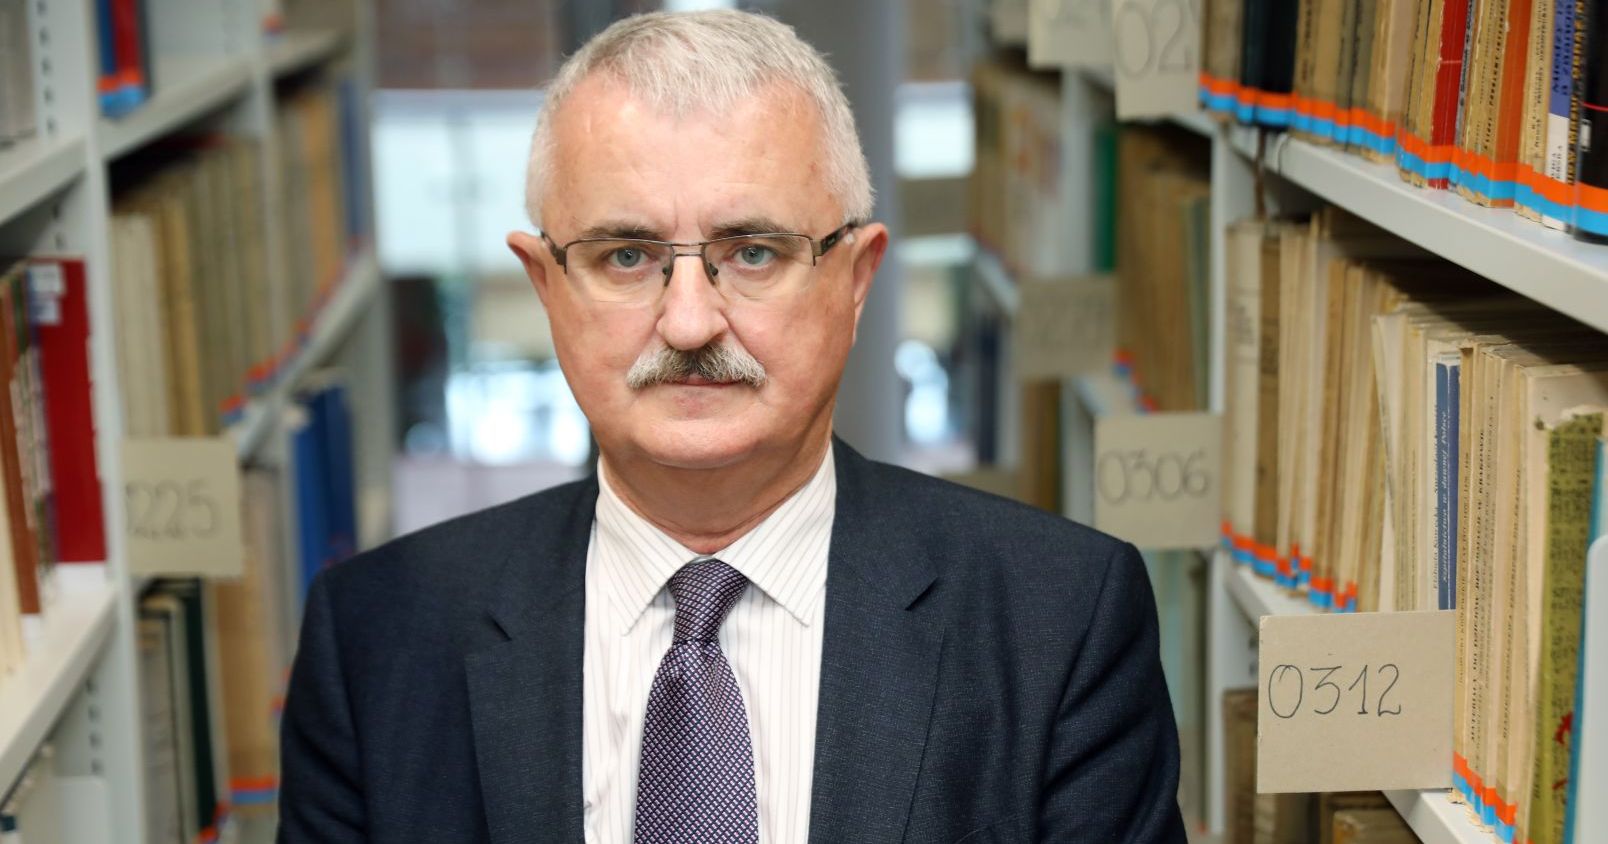 Prof. dr hab. Bogusław Dybaś Potret mężczyzny stojącego między dwoma regałami z książkami w bibliotece.